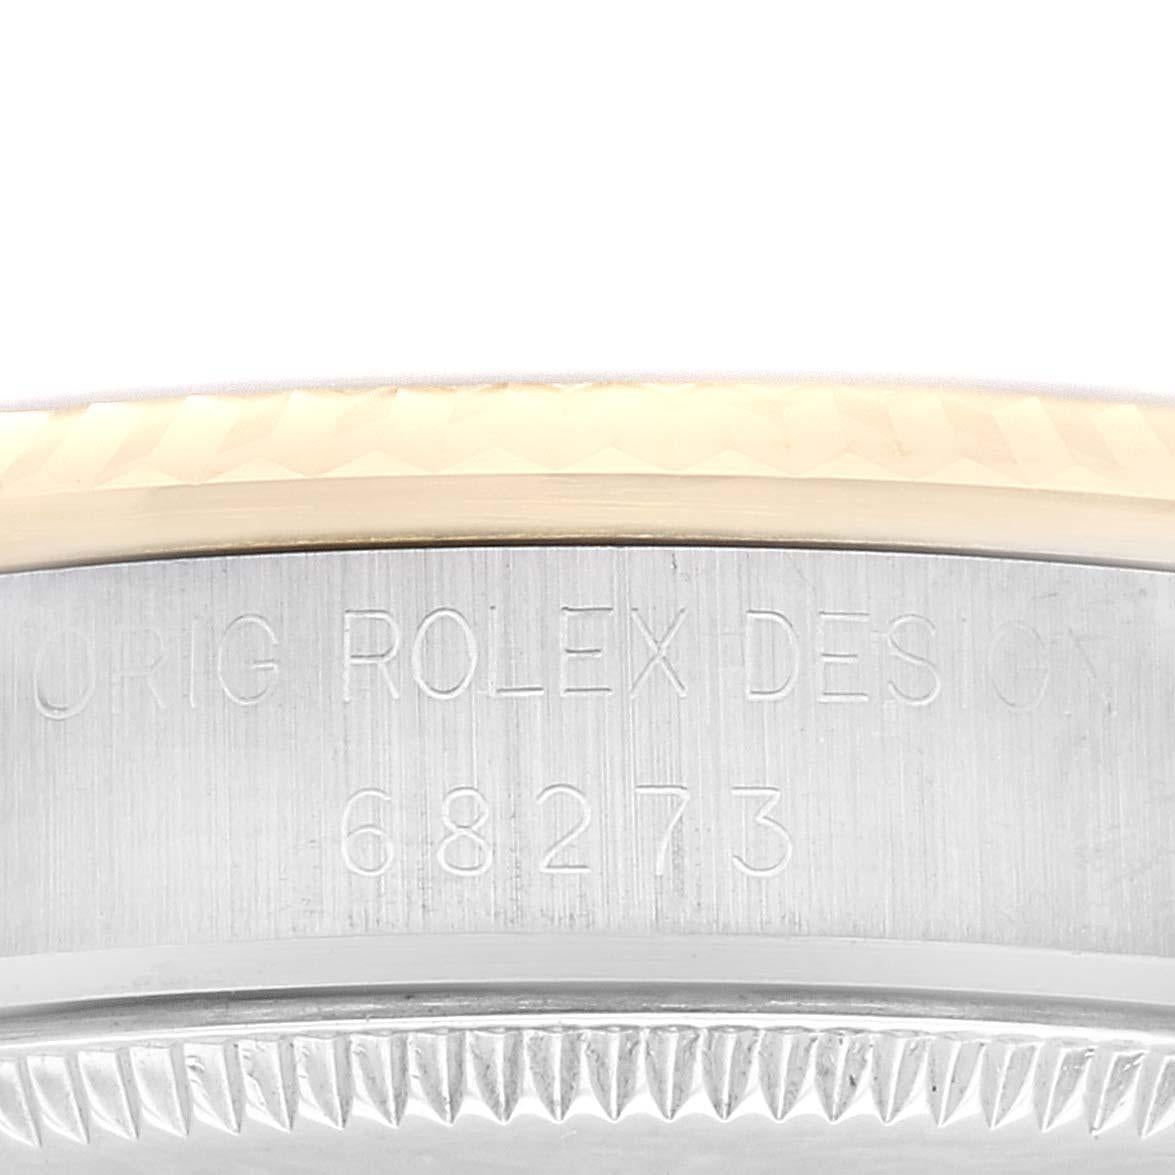 Rolex Datejust Midsize Acier Or Jaune Montre Femme 68273 Boite à Papiers. Mouvement automatique à remontage automatique, officiellement certifié chronomètre. Boîtier oyster en acier inoxydable de 31 mm de diamètre. Logo Rolex sur une couronne en or